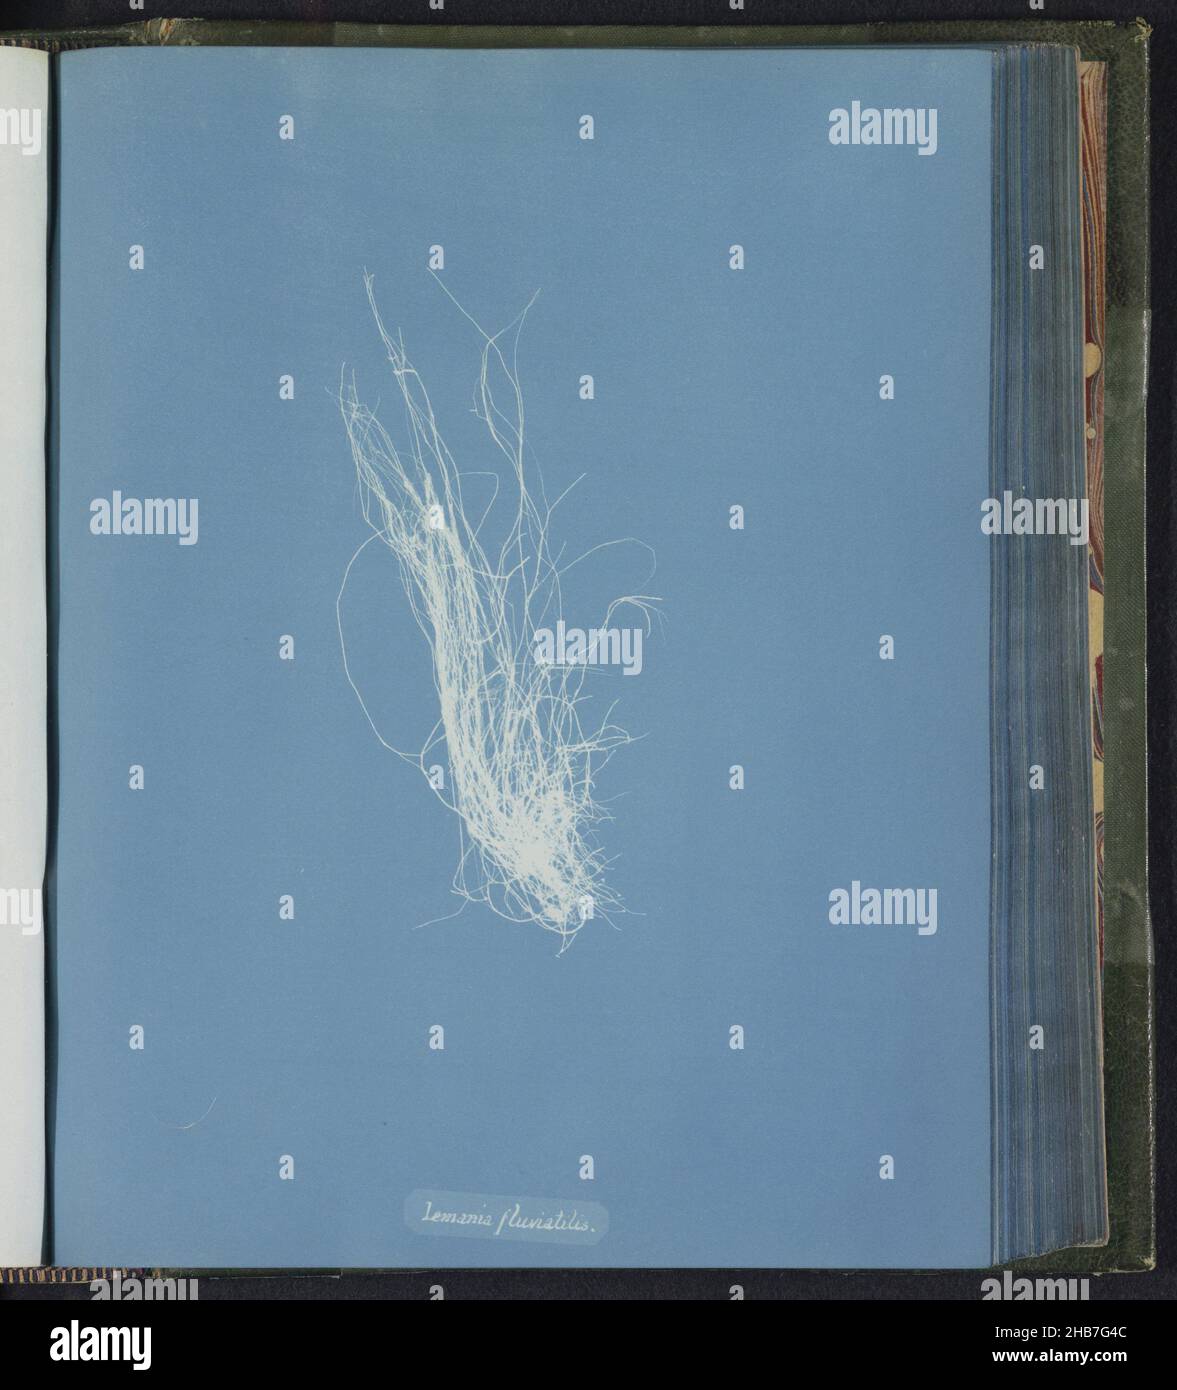 Lemania fluviatilis [= Lemanea fluviatilis], Anna Atkins, Royaume-Uni, c.1843 - c.1853, support photographique, cyanotype, hauteur 250 mm × largeur 200 mm Banque D'Images